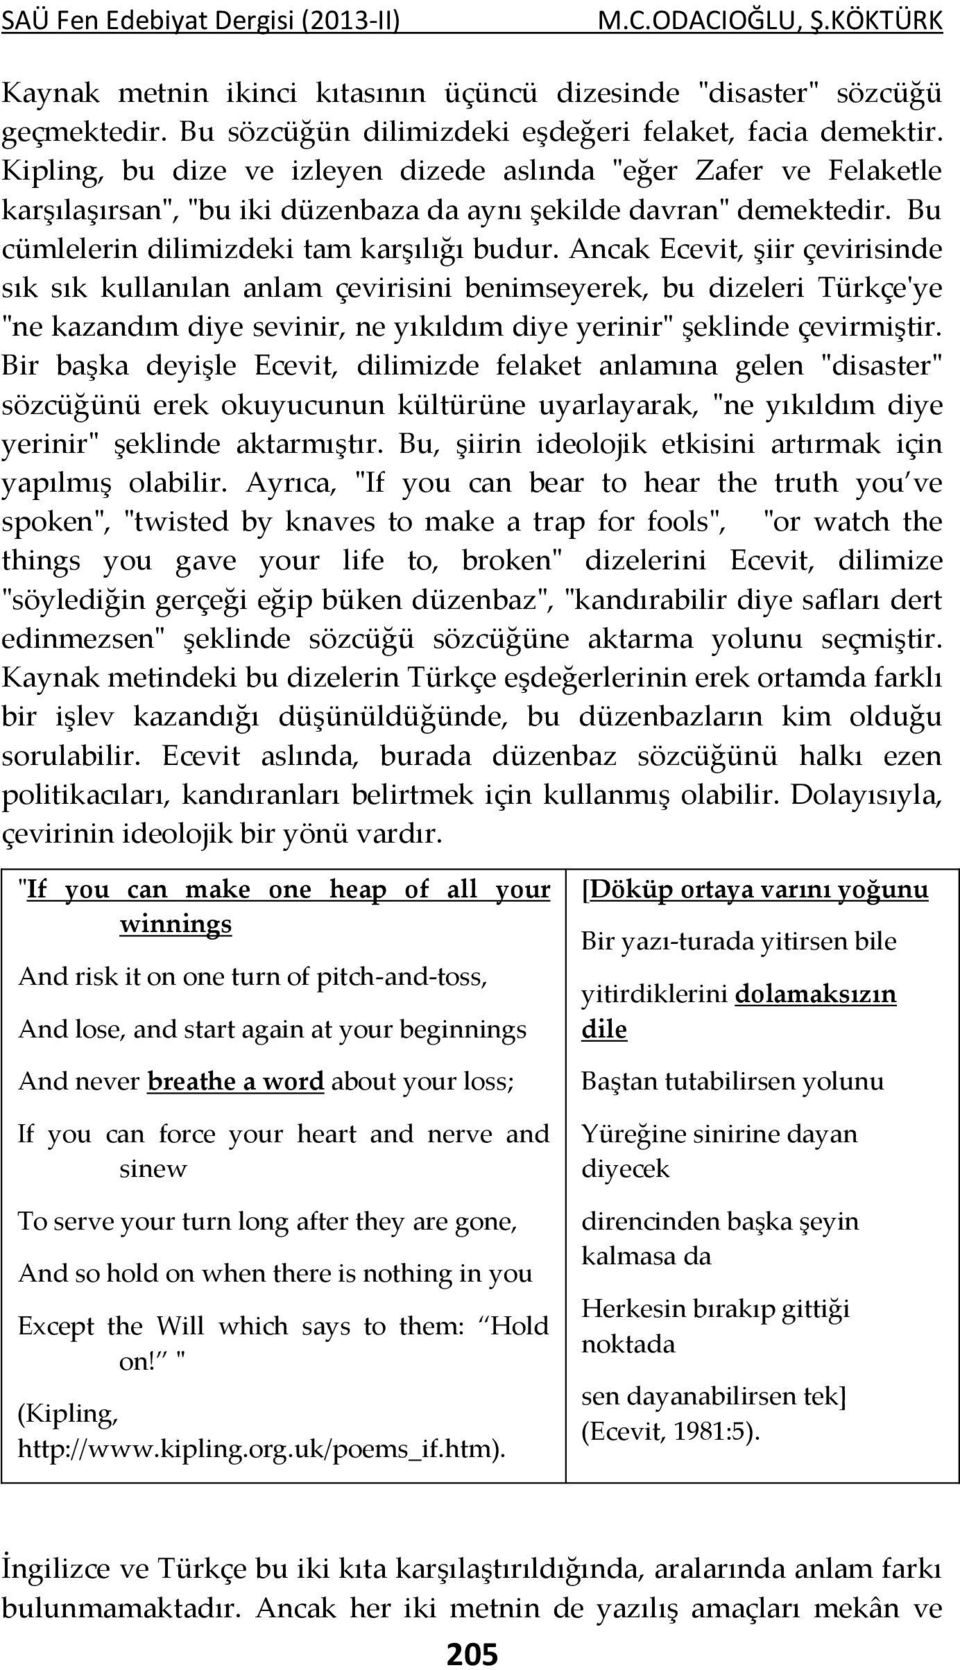 Ancak Ecevit, şiir çevirisinde sık sık kullanılan anlam çevirisini benimseyerek, bu dizeleri Türkçe'ye "ne kazandım diye sevinir, ne yıkıldım diye yerinir" şeklinde çevirmiştir.